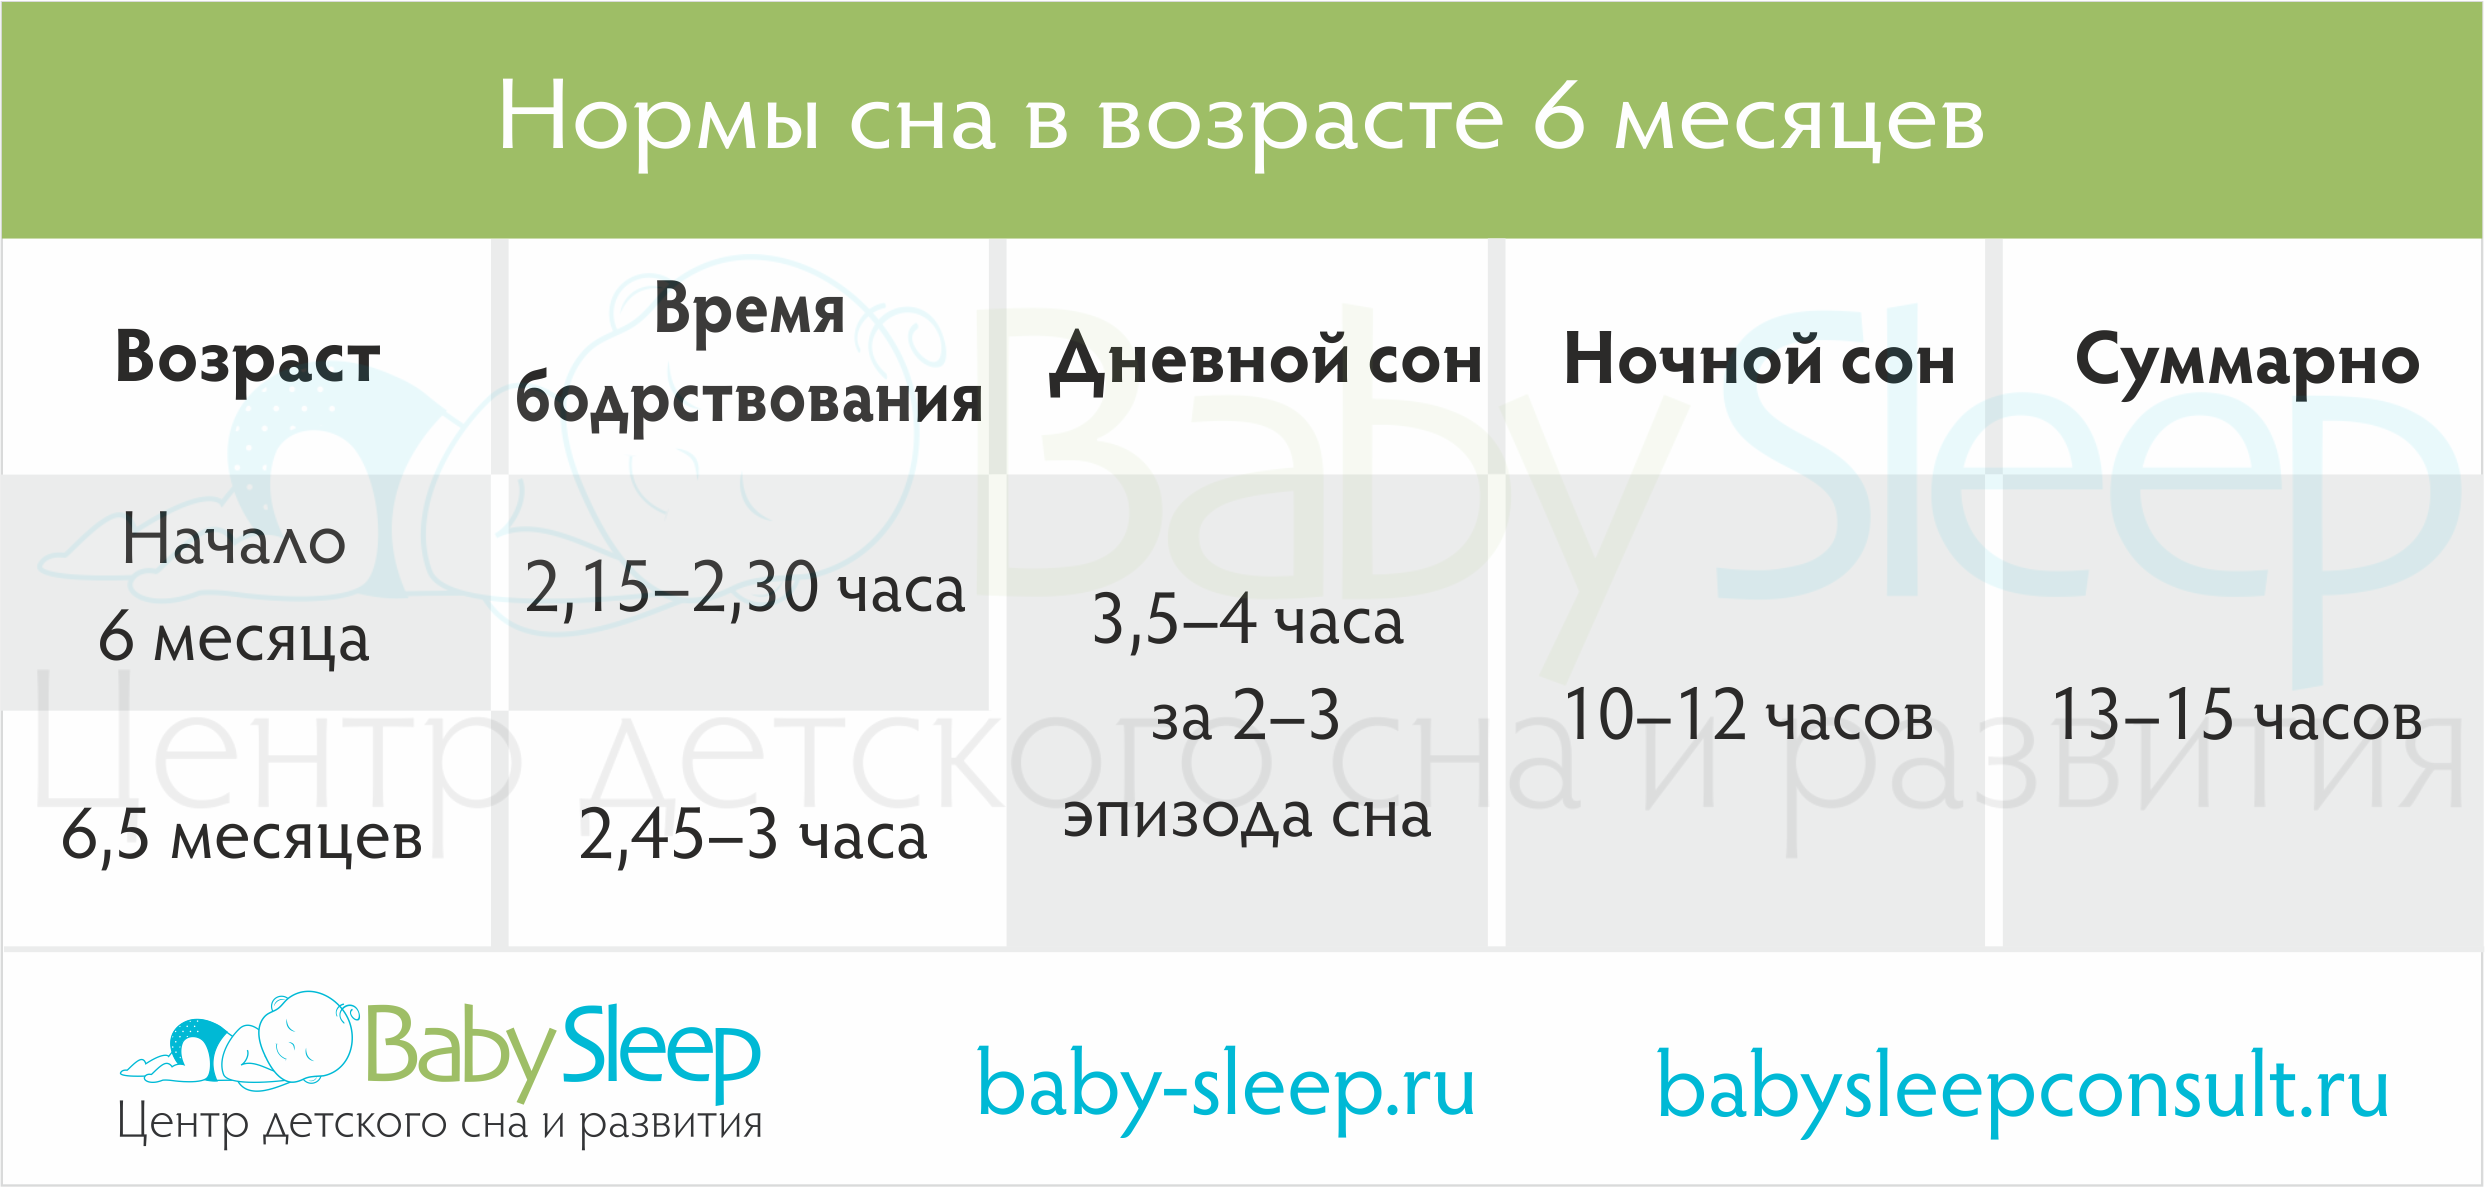 Сколько часов должен спать ребёнок в возрасте 6 месяцев